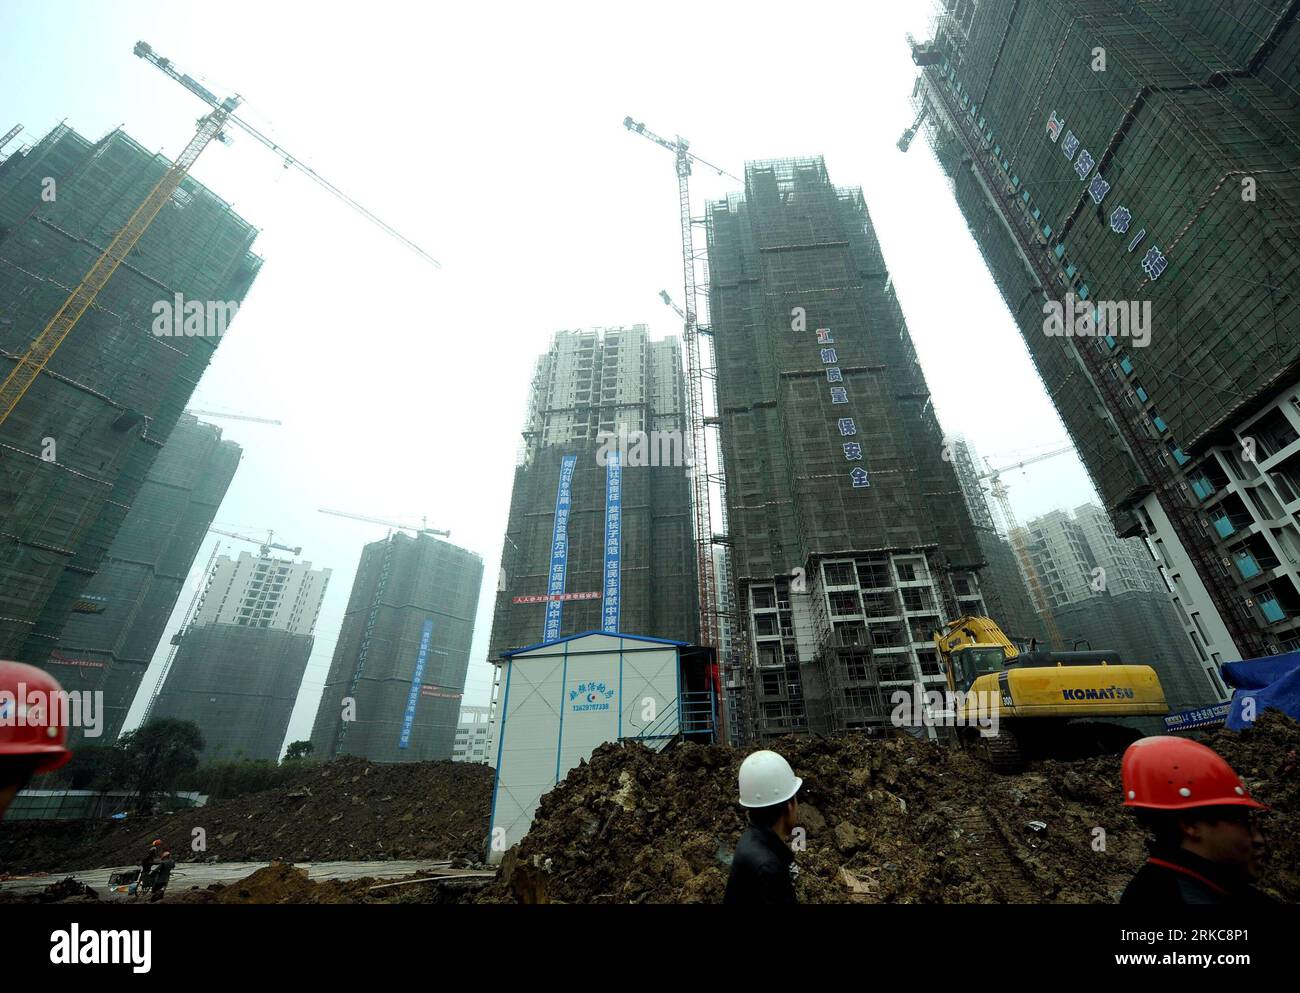 Bildnummer : 54697407 Datum : 02.12.2010 Copyright : imago/Xinhua (101202) -- CHONGQING, 2 décembre 2010 (Xinhua) -- la photo prise le 2 décembre 2010 montre le site de construction d'appartements à loyer public dans la municipalité de Chongqing, sud-ouest de la Chine. On dit que le premier lot d'appartements à loyer public à Chongqing sera mis en service à la fin de l'année prochaine, ce qui pourrait fournir des maisons à 12 000 à 15 000 familles à faible revenu. Au cours des trois prochaines années, un énorme projet de construction d'appartements à loyer public sera réalisé à Chongqing pour s'attaquer au problème du logement pour les personnes à revenu faible et intermédiaire dont le nombre acco Banque D'Images